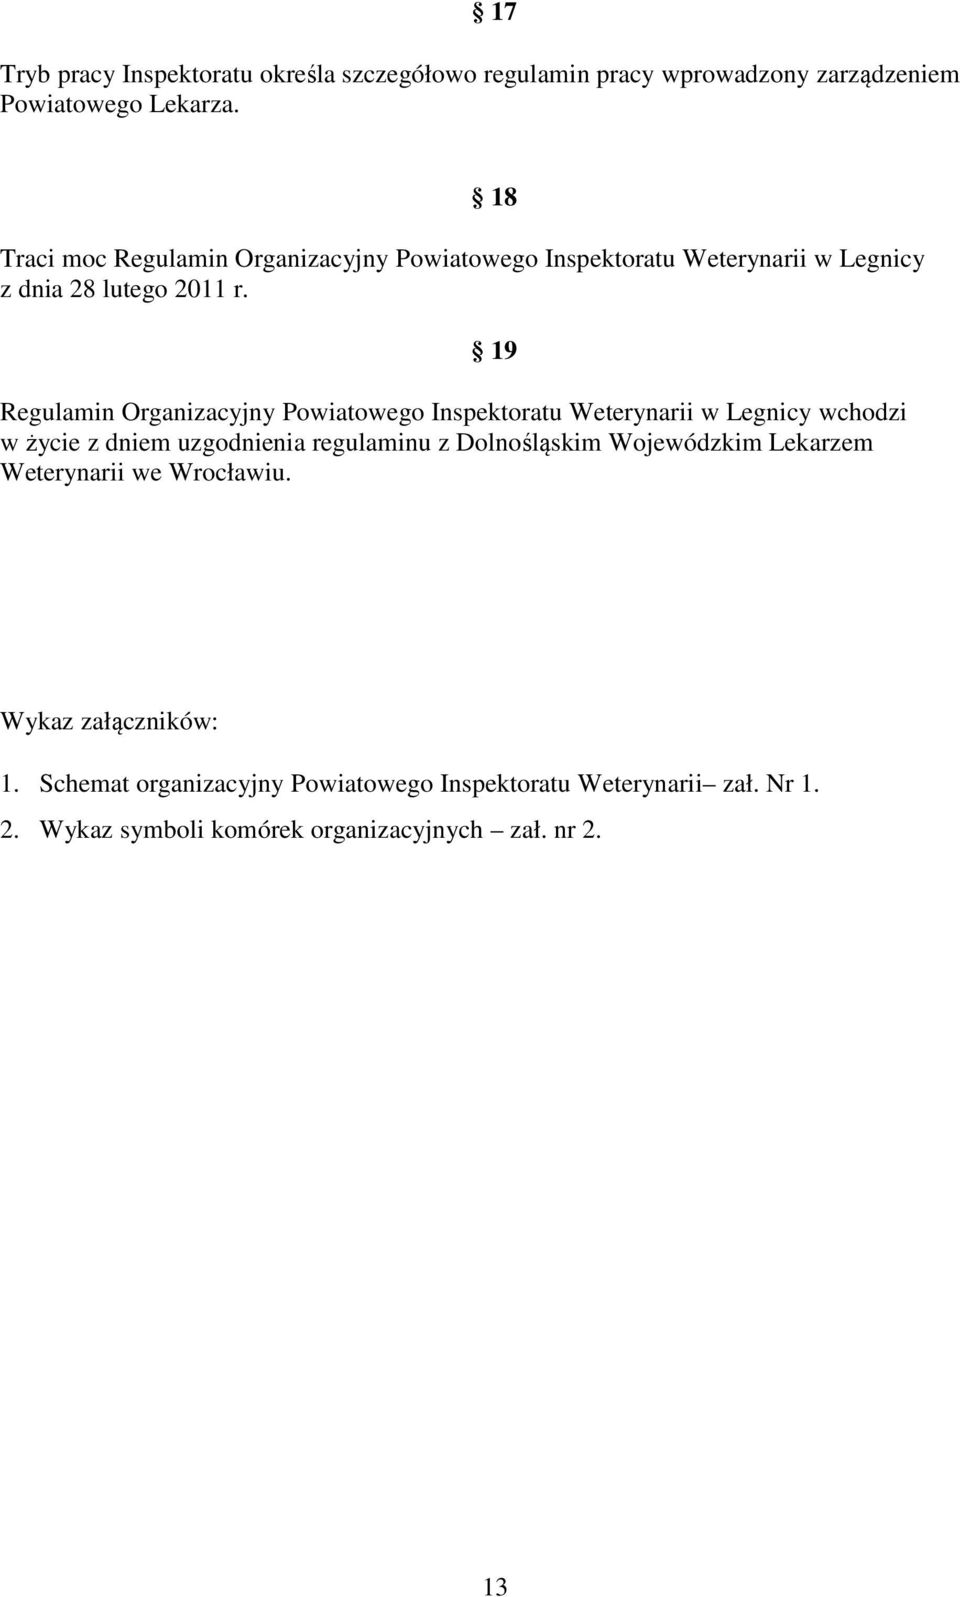 18 19 Regulamin Organizacyjny Powiatowego Inspektoratu Weterynarii w Legnicy wchodzi w życie z dniem uzgodnienia regulaminu z